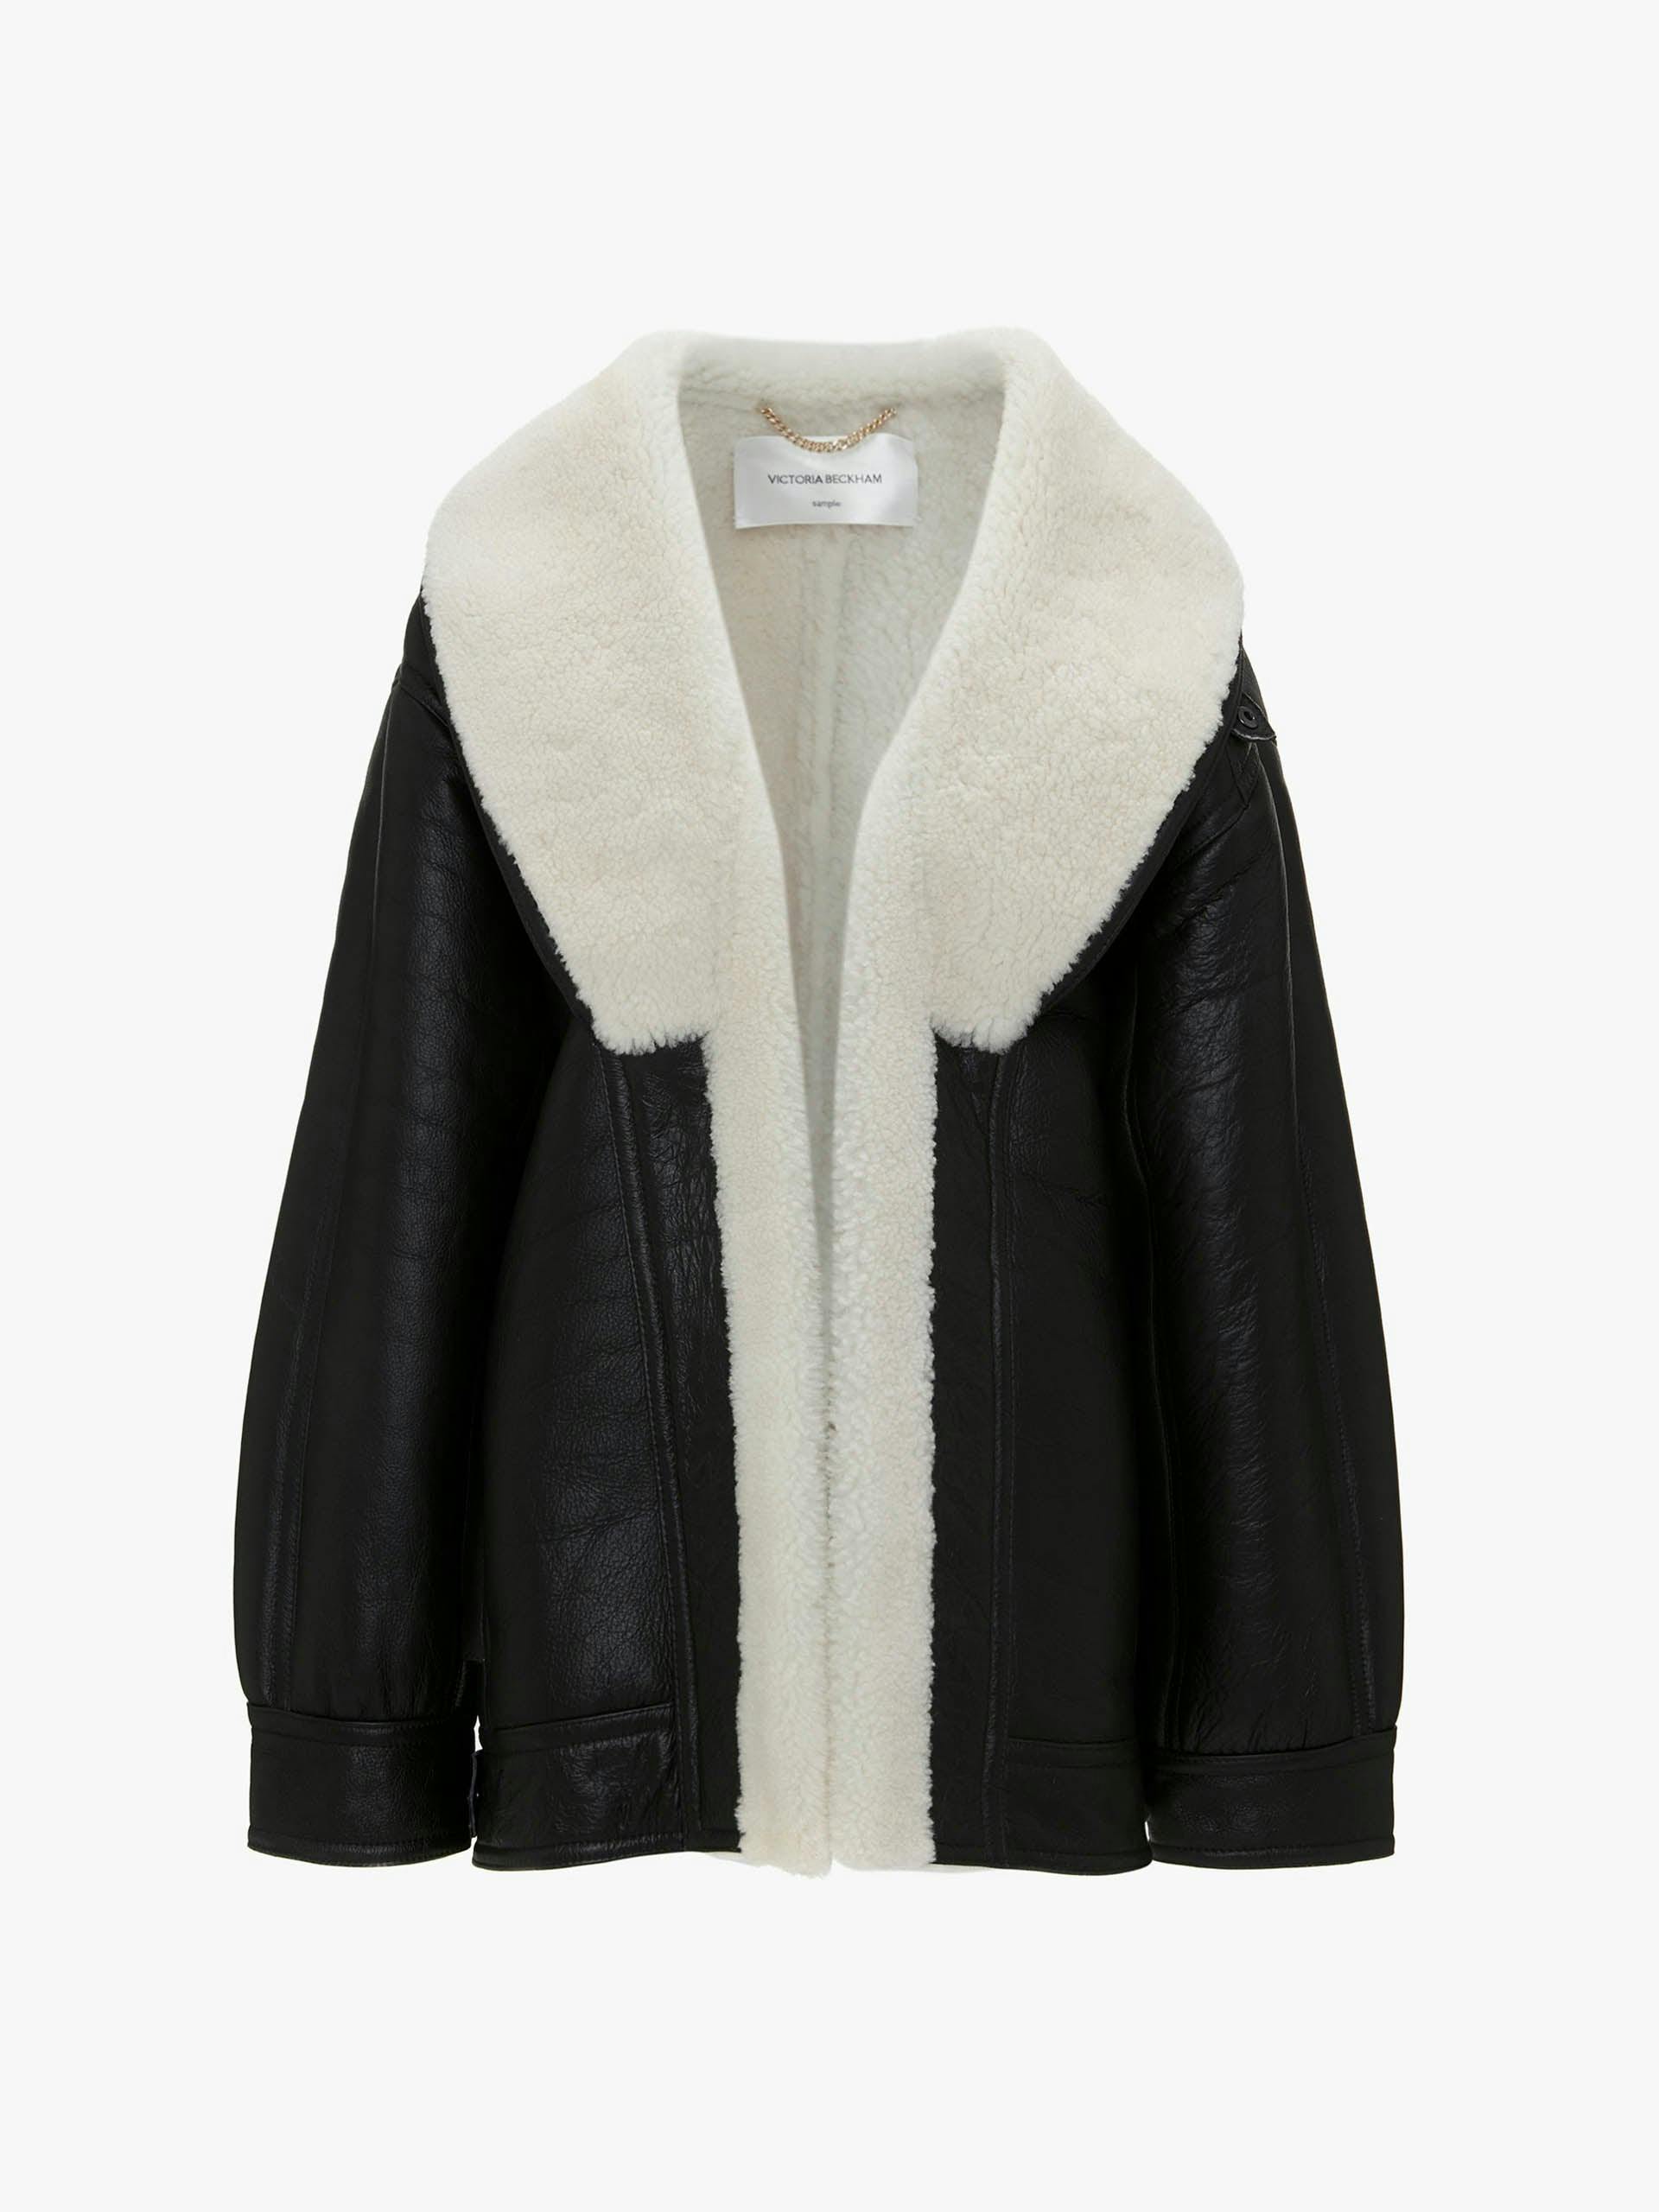 Shearling coat in monochrome